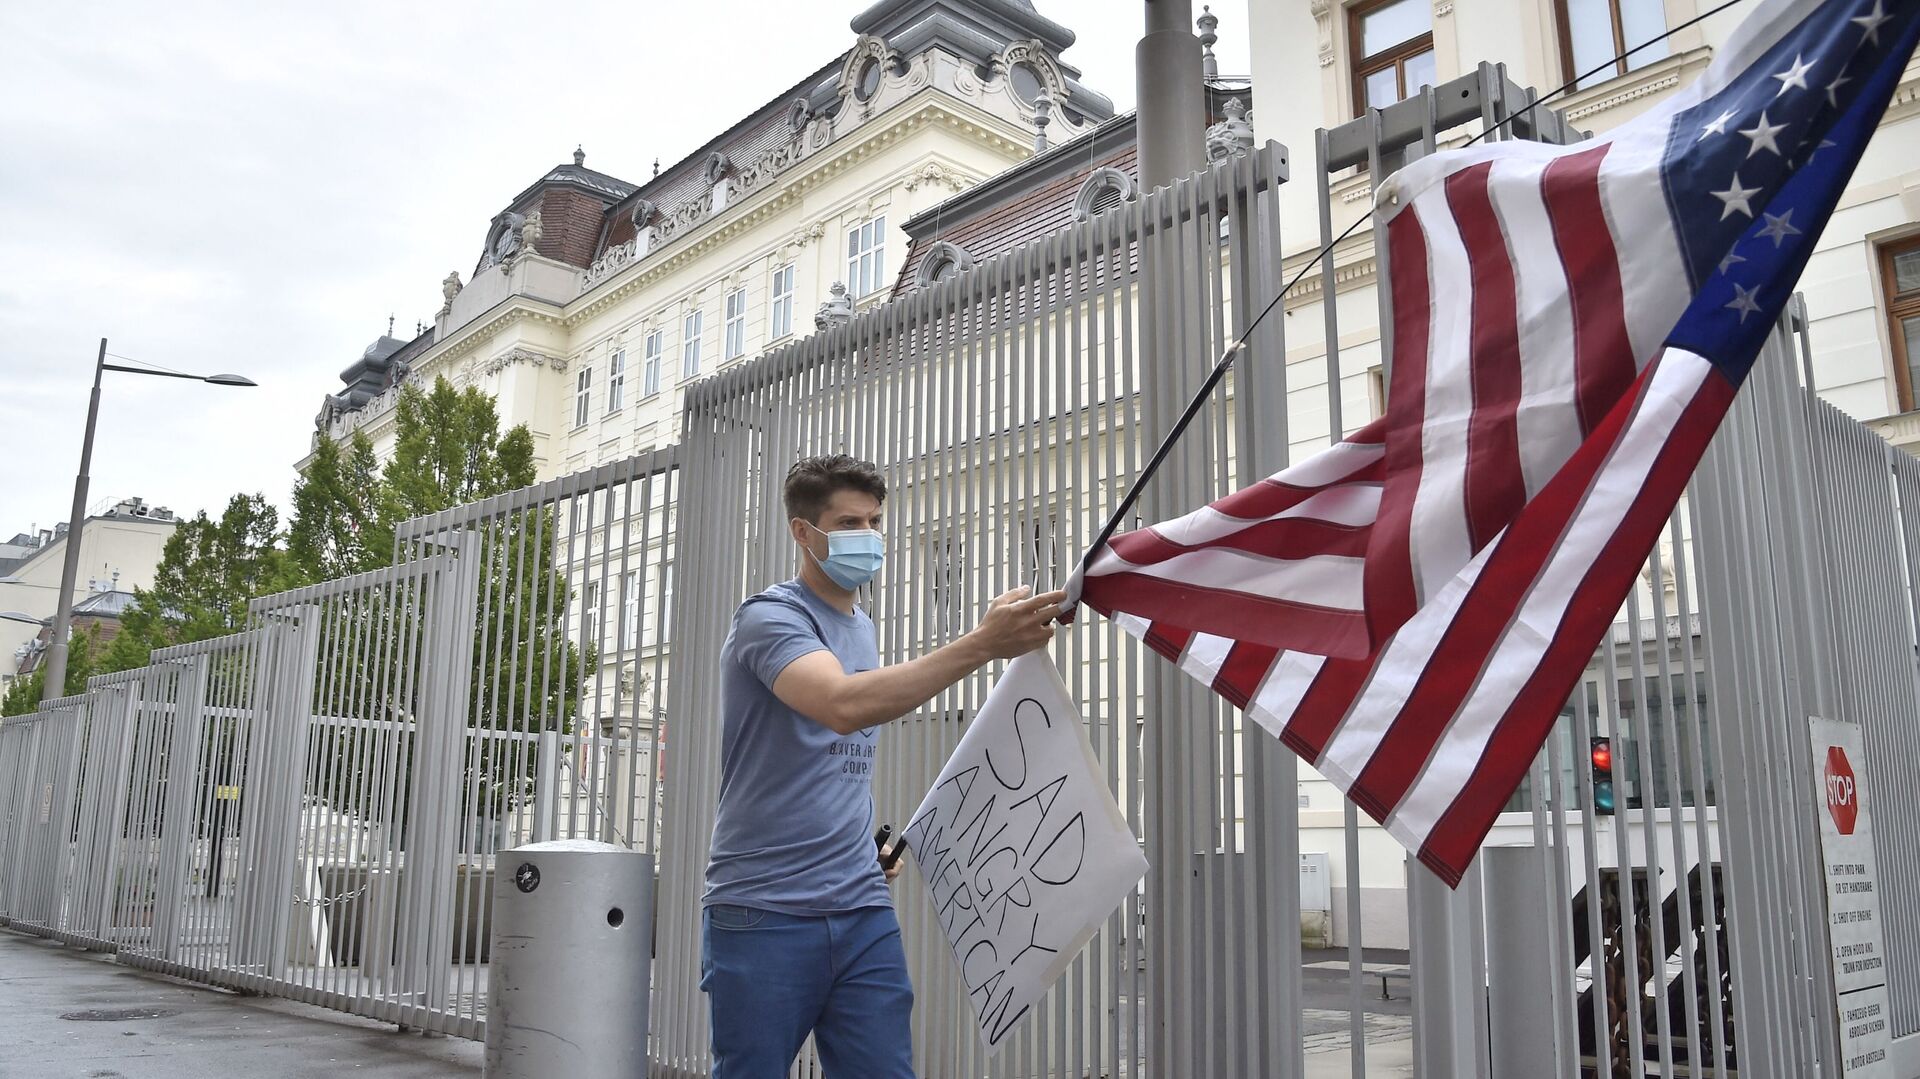 Протестующий сторонник BLM в Вене, Австрия, с флагом США у посольства Соединенных Штатов - Sputnik Грузия, 1920, 21.07.2021